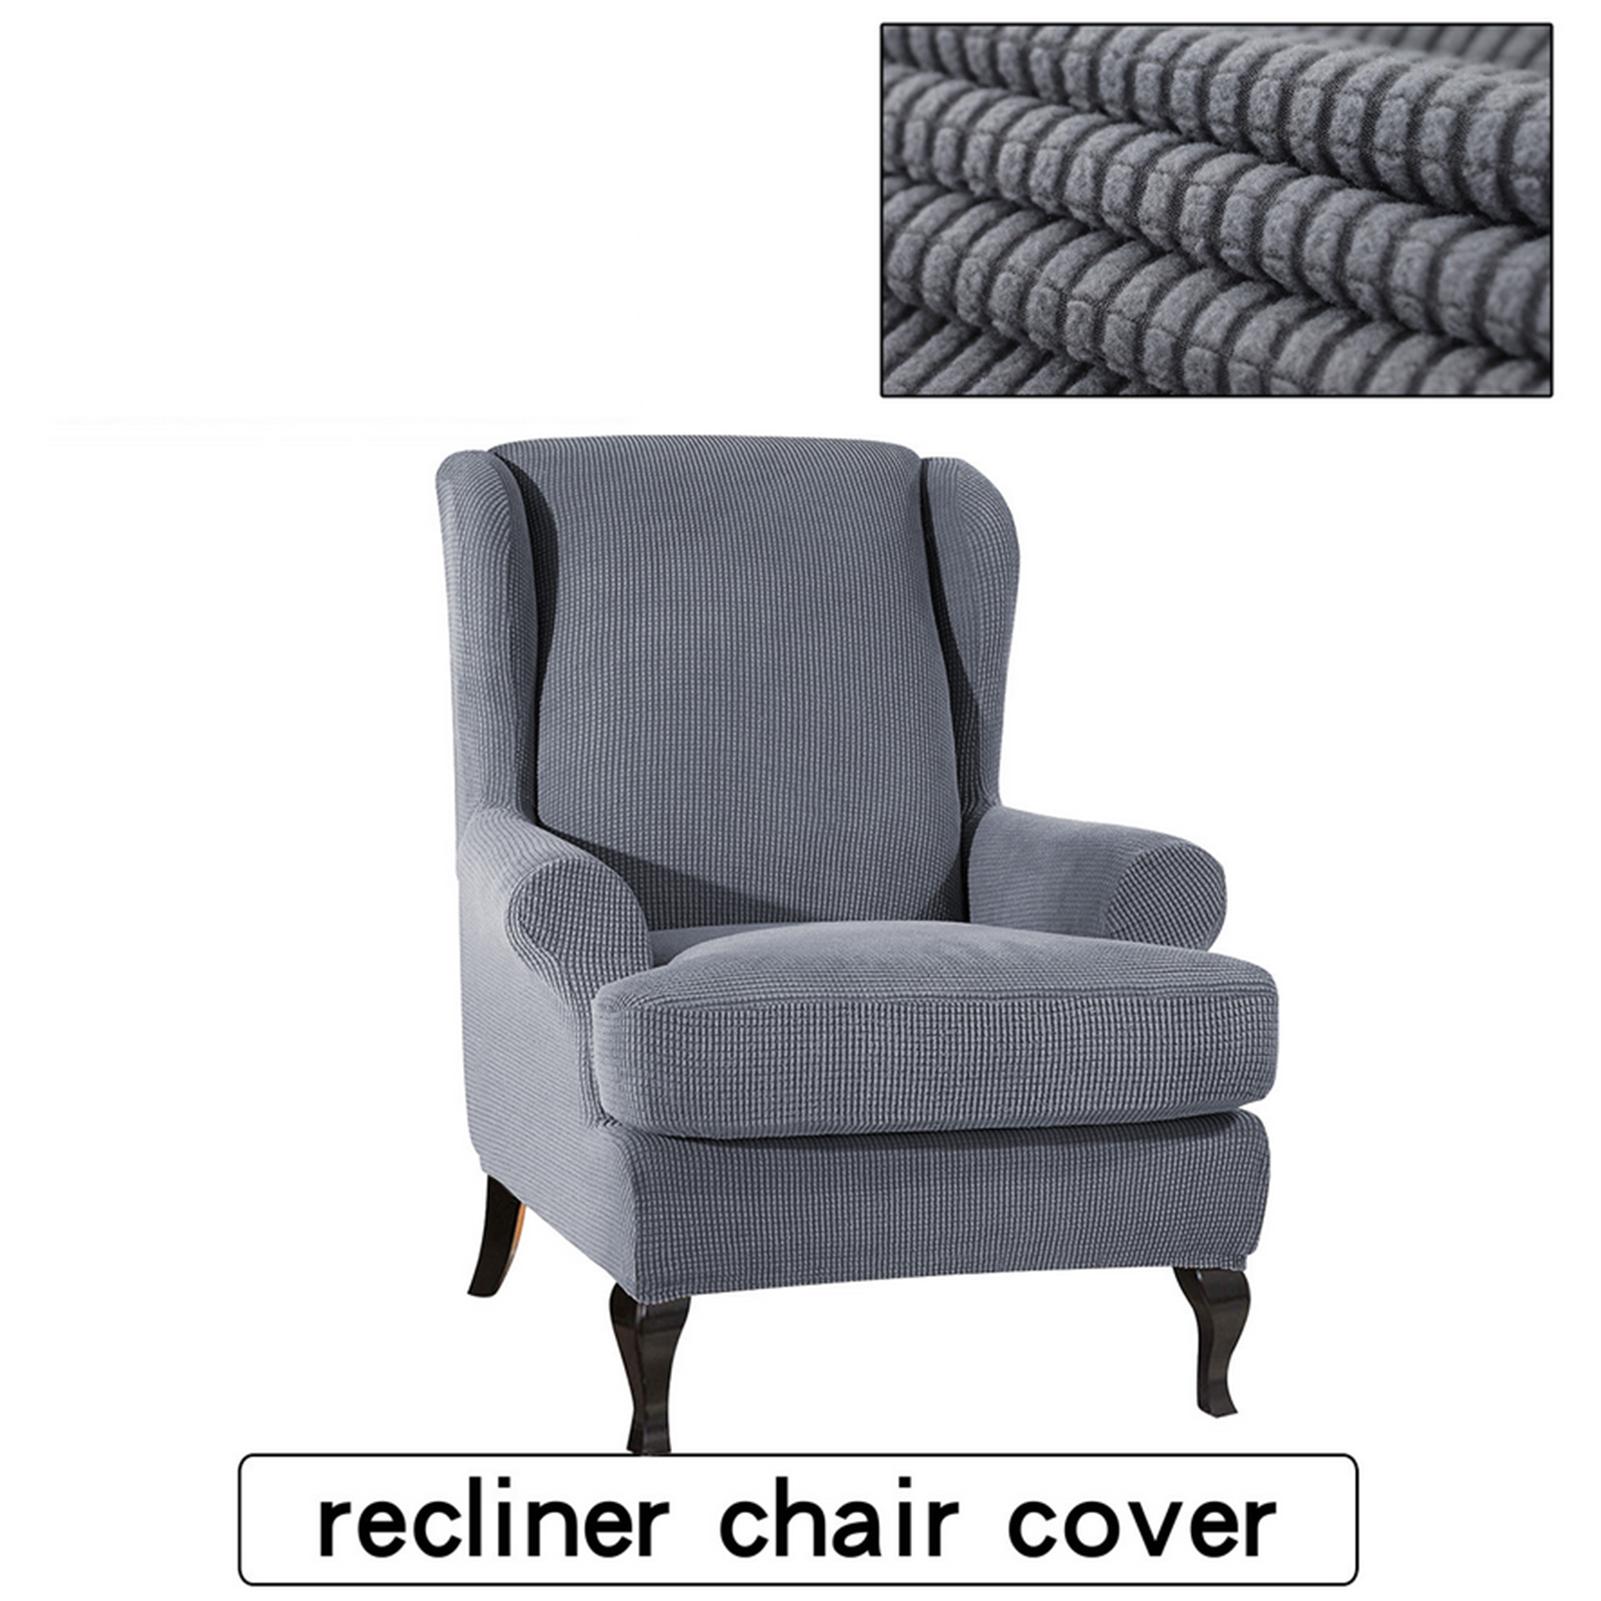 VỎ bọc ghế sofa bằng vải mềm mại và đàn hồi, dễ dàng kéo giãn.